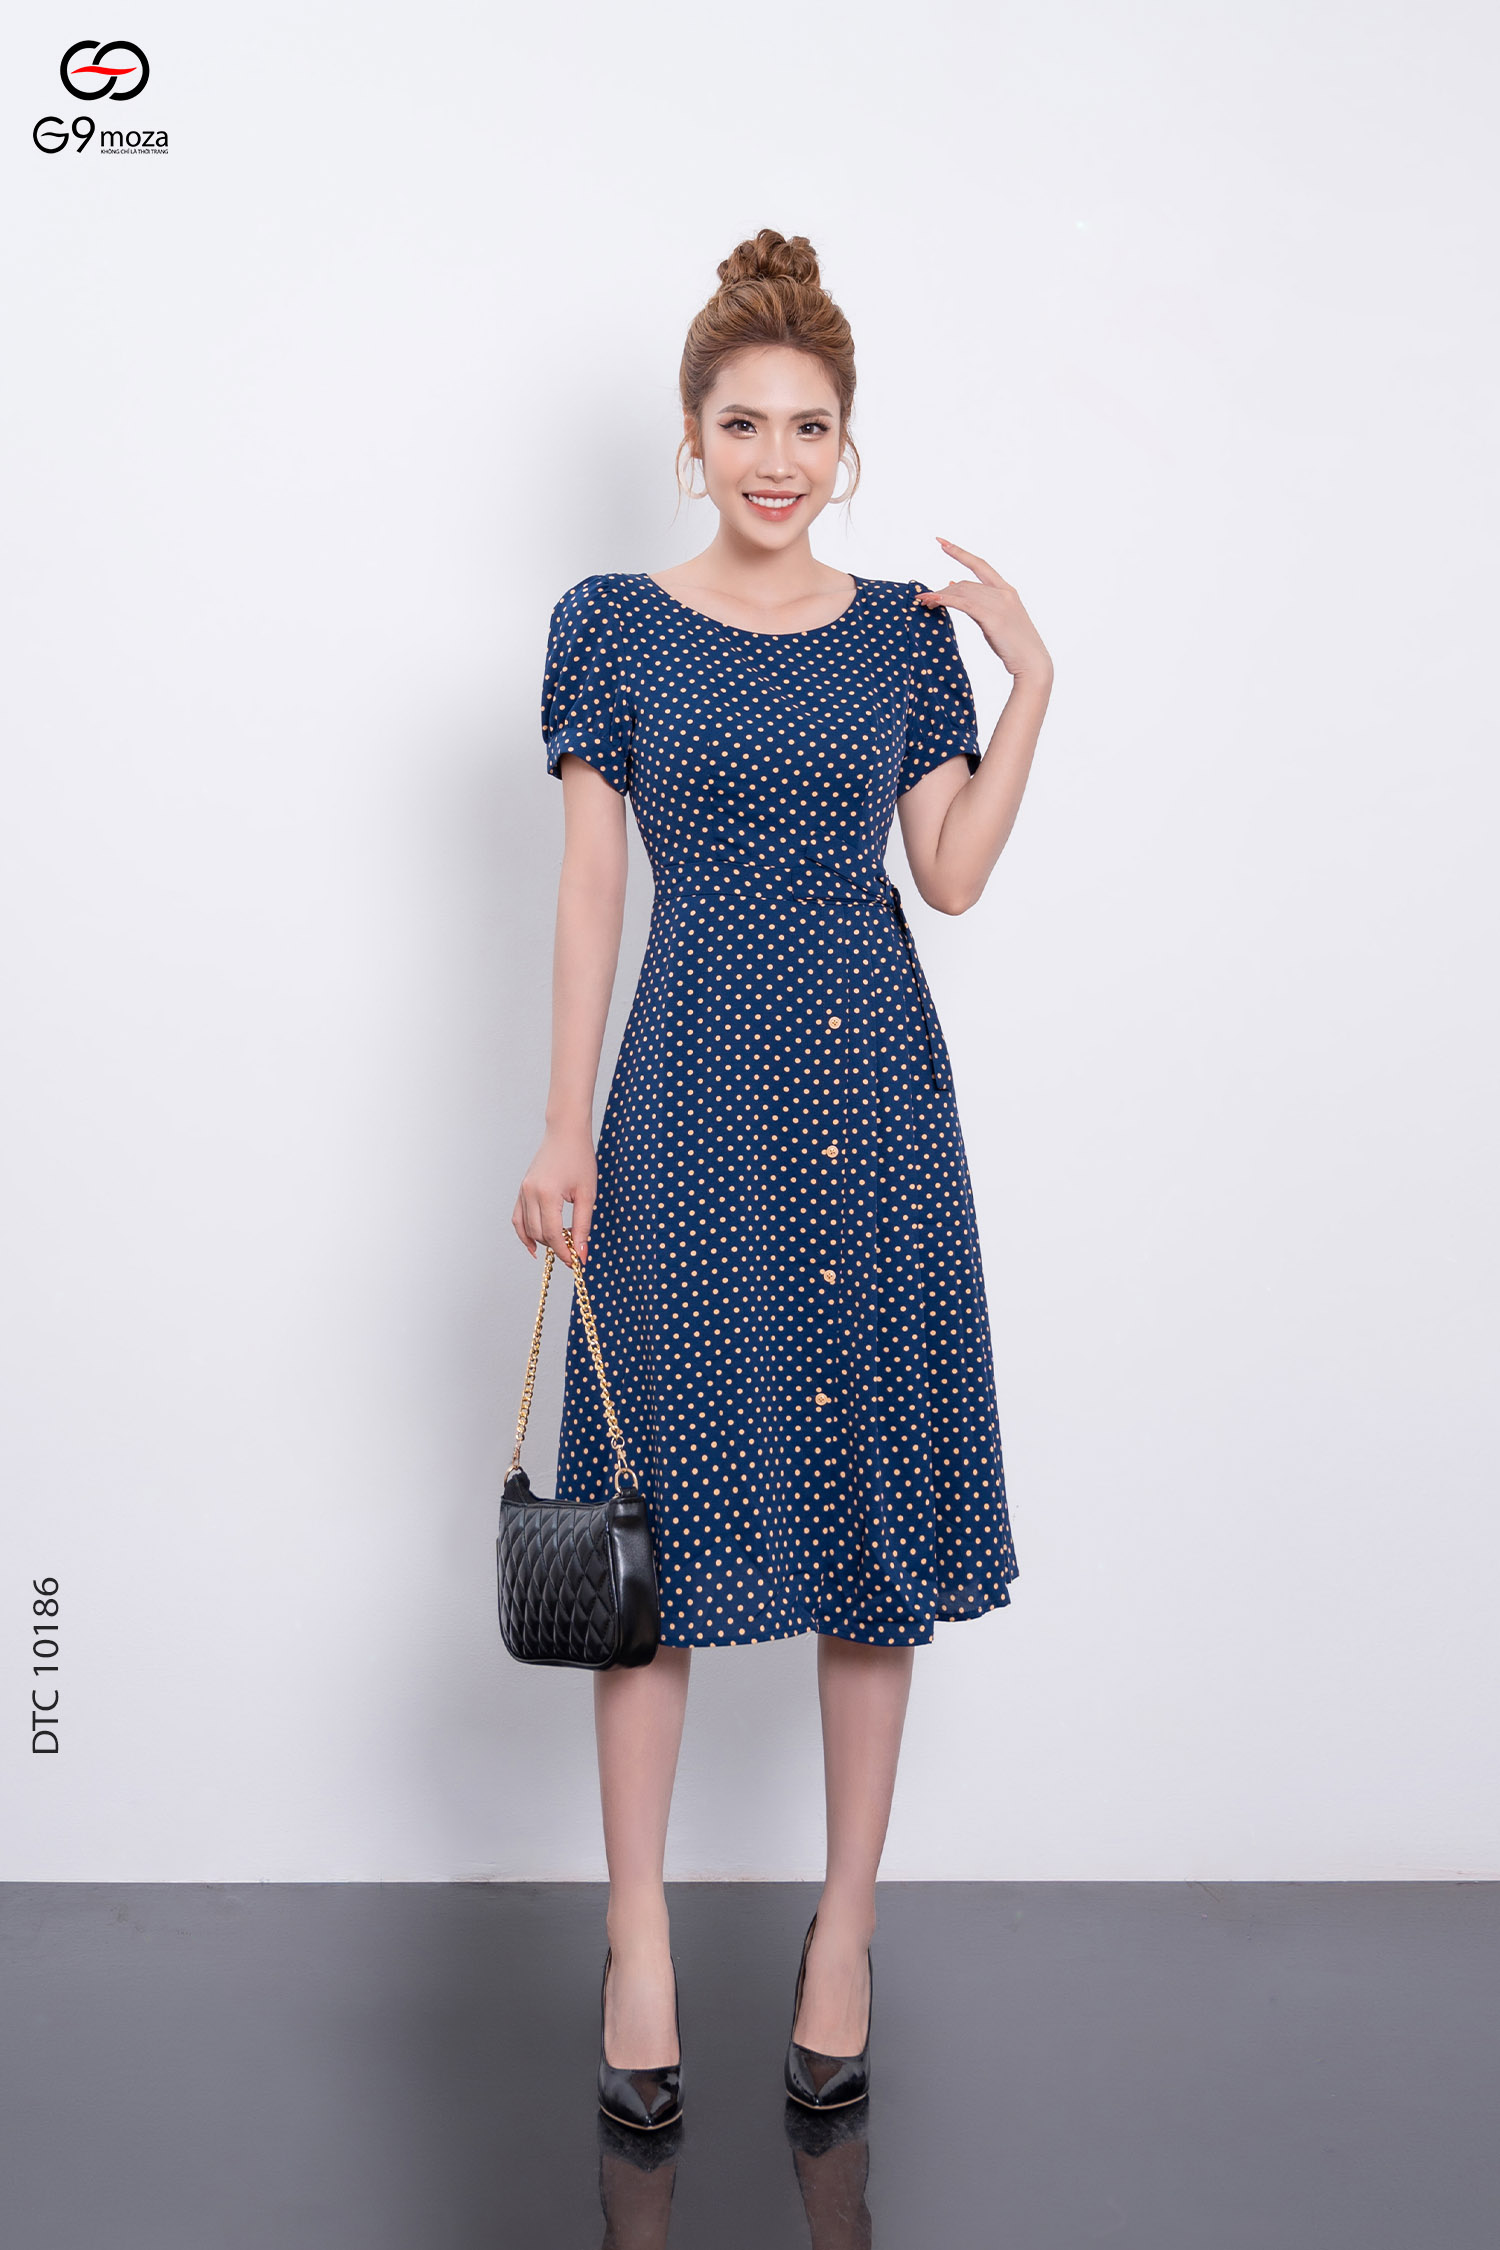 TOP 11 mẫu váy maxi đi biển cho người béo hóa “Mi nhon”